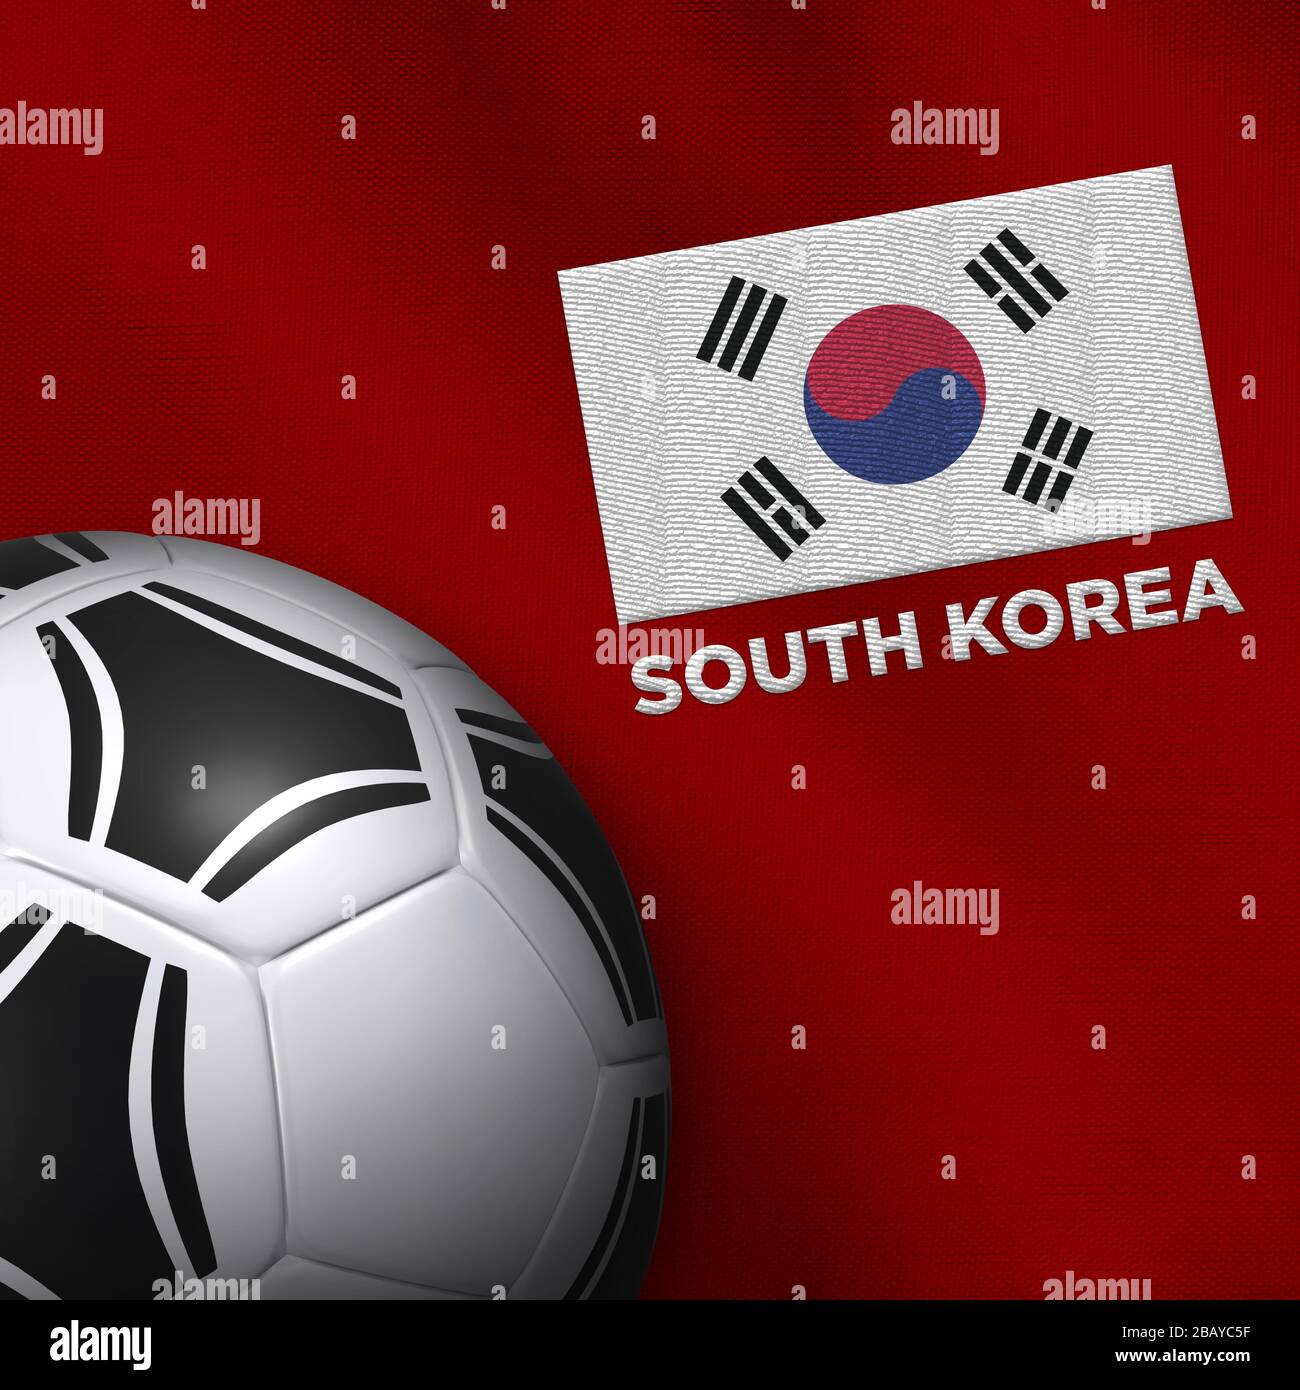 Fußball- und Nationalmannschaftstrikot Südkoreas. Stockfoto